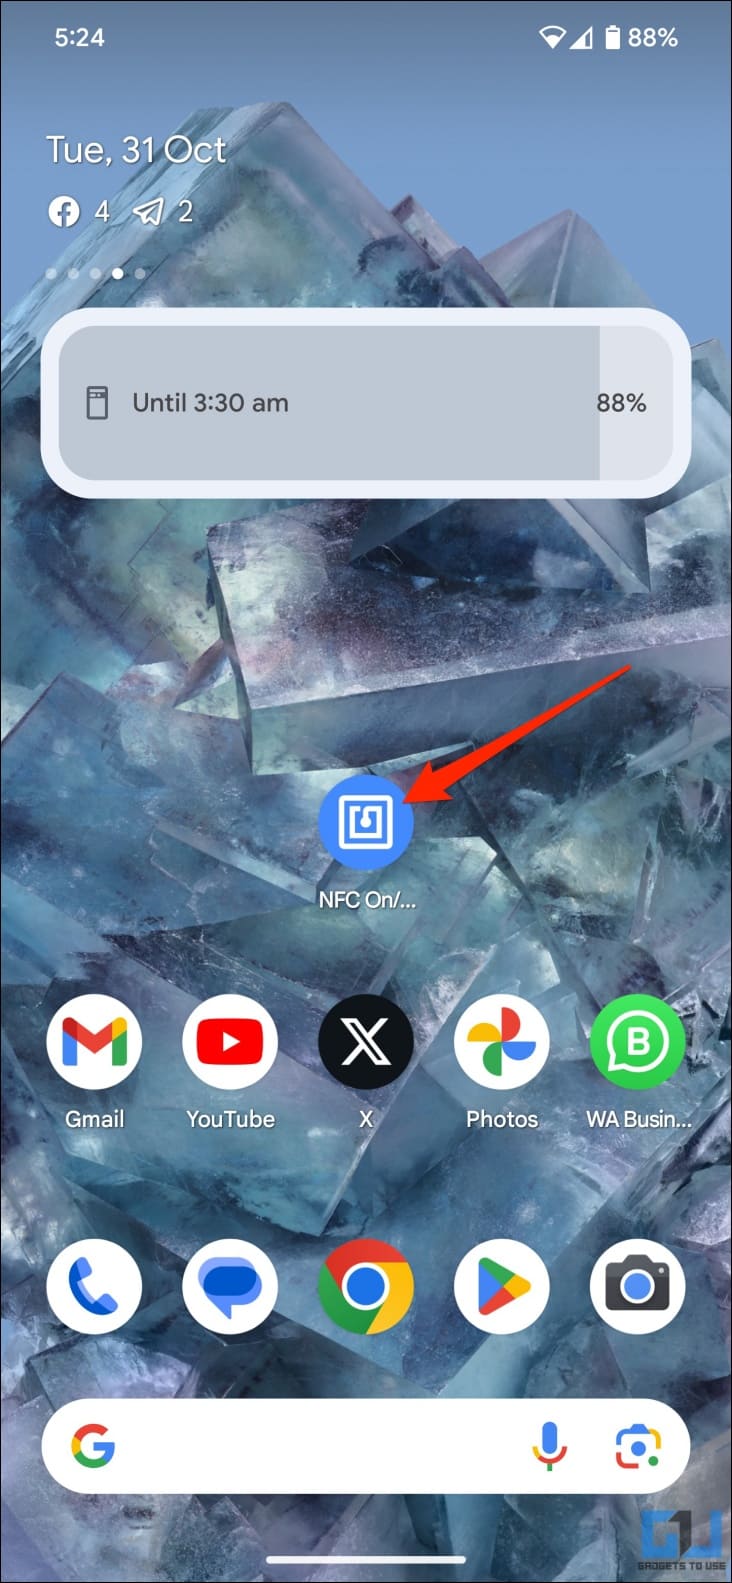 Tap NFC app icon